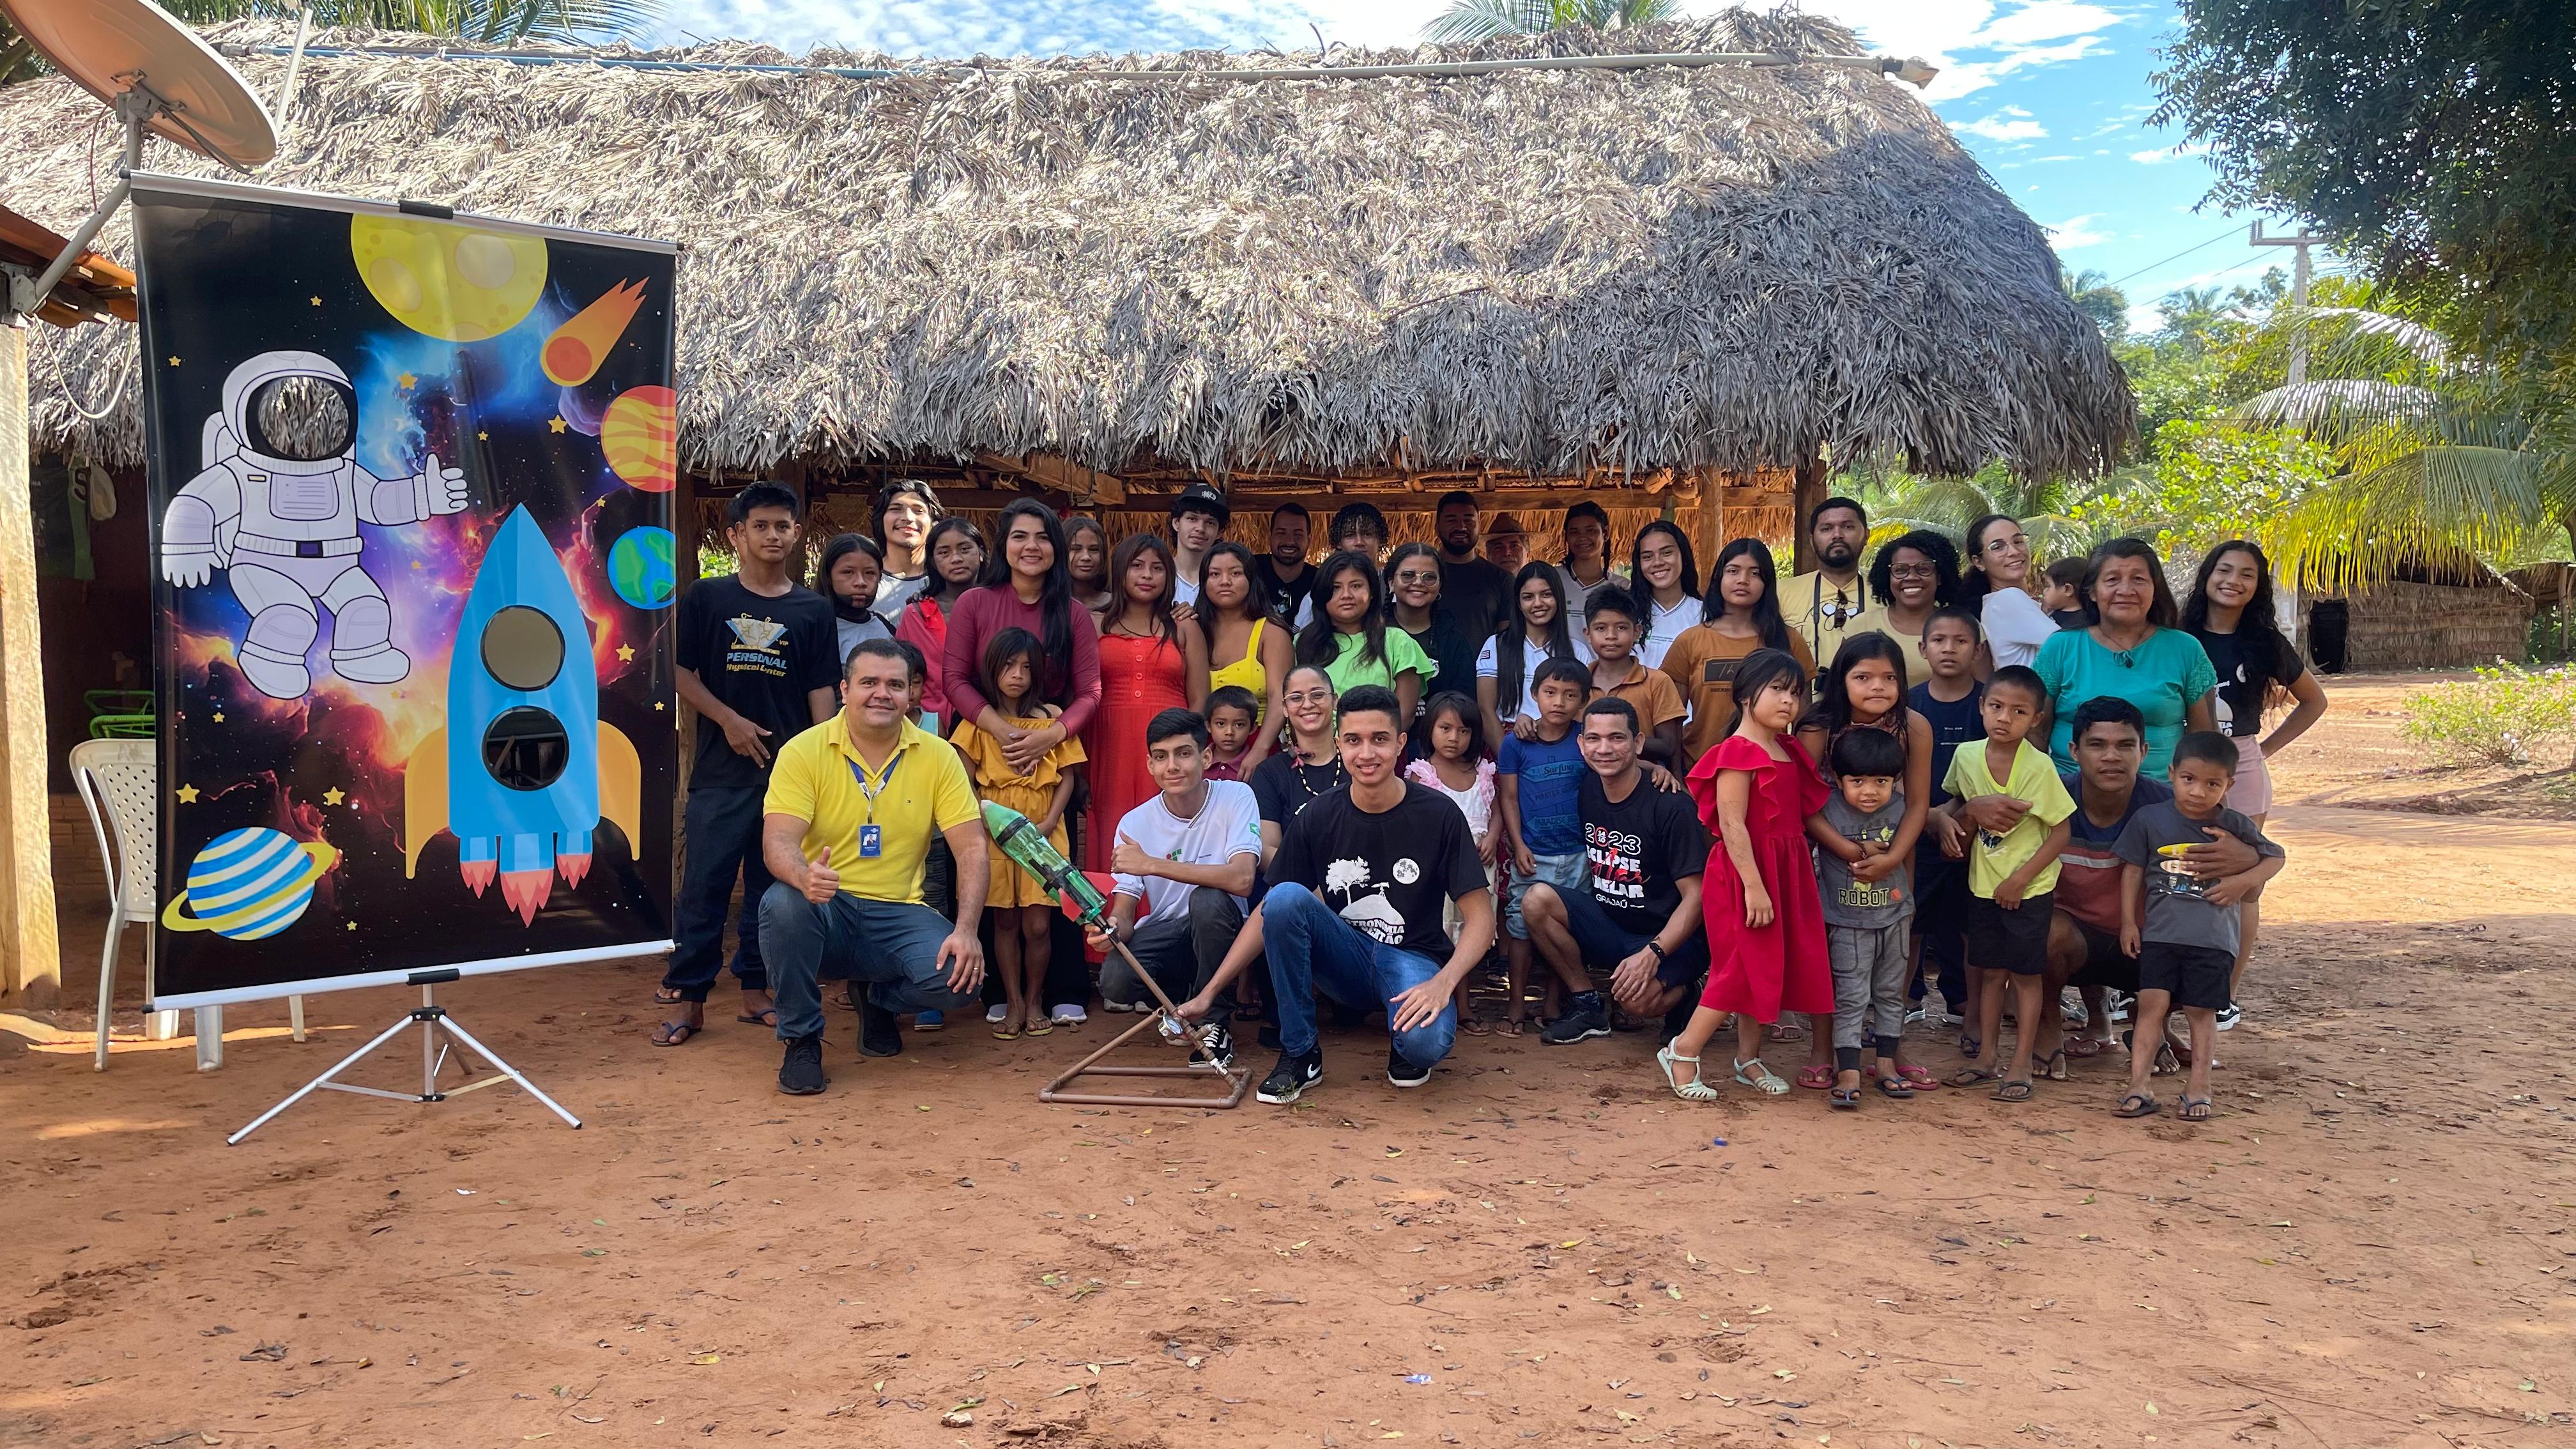 Projeto de extensão Astronomia no Sertão, da UFMA Grajaú, realiza Mostra Brasileira de Foguetes em comunidade indígena